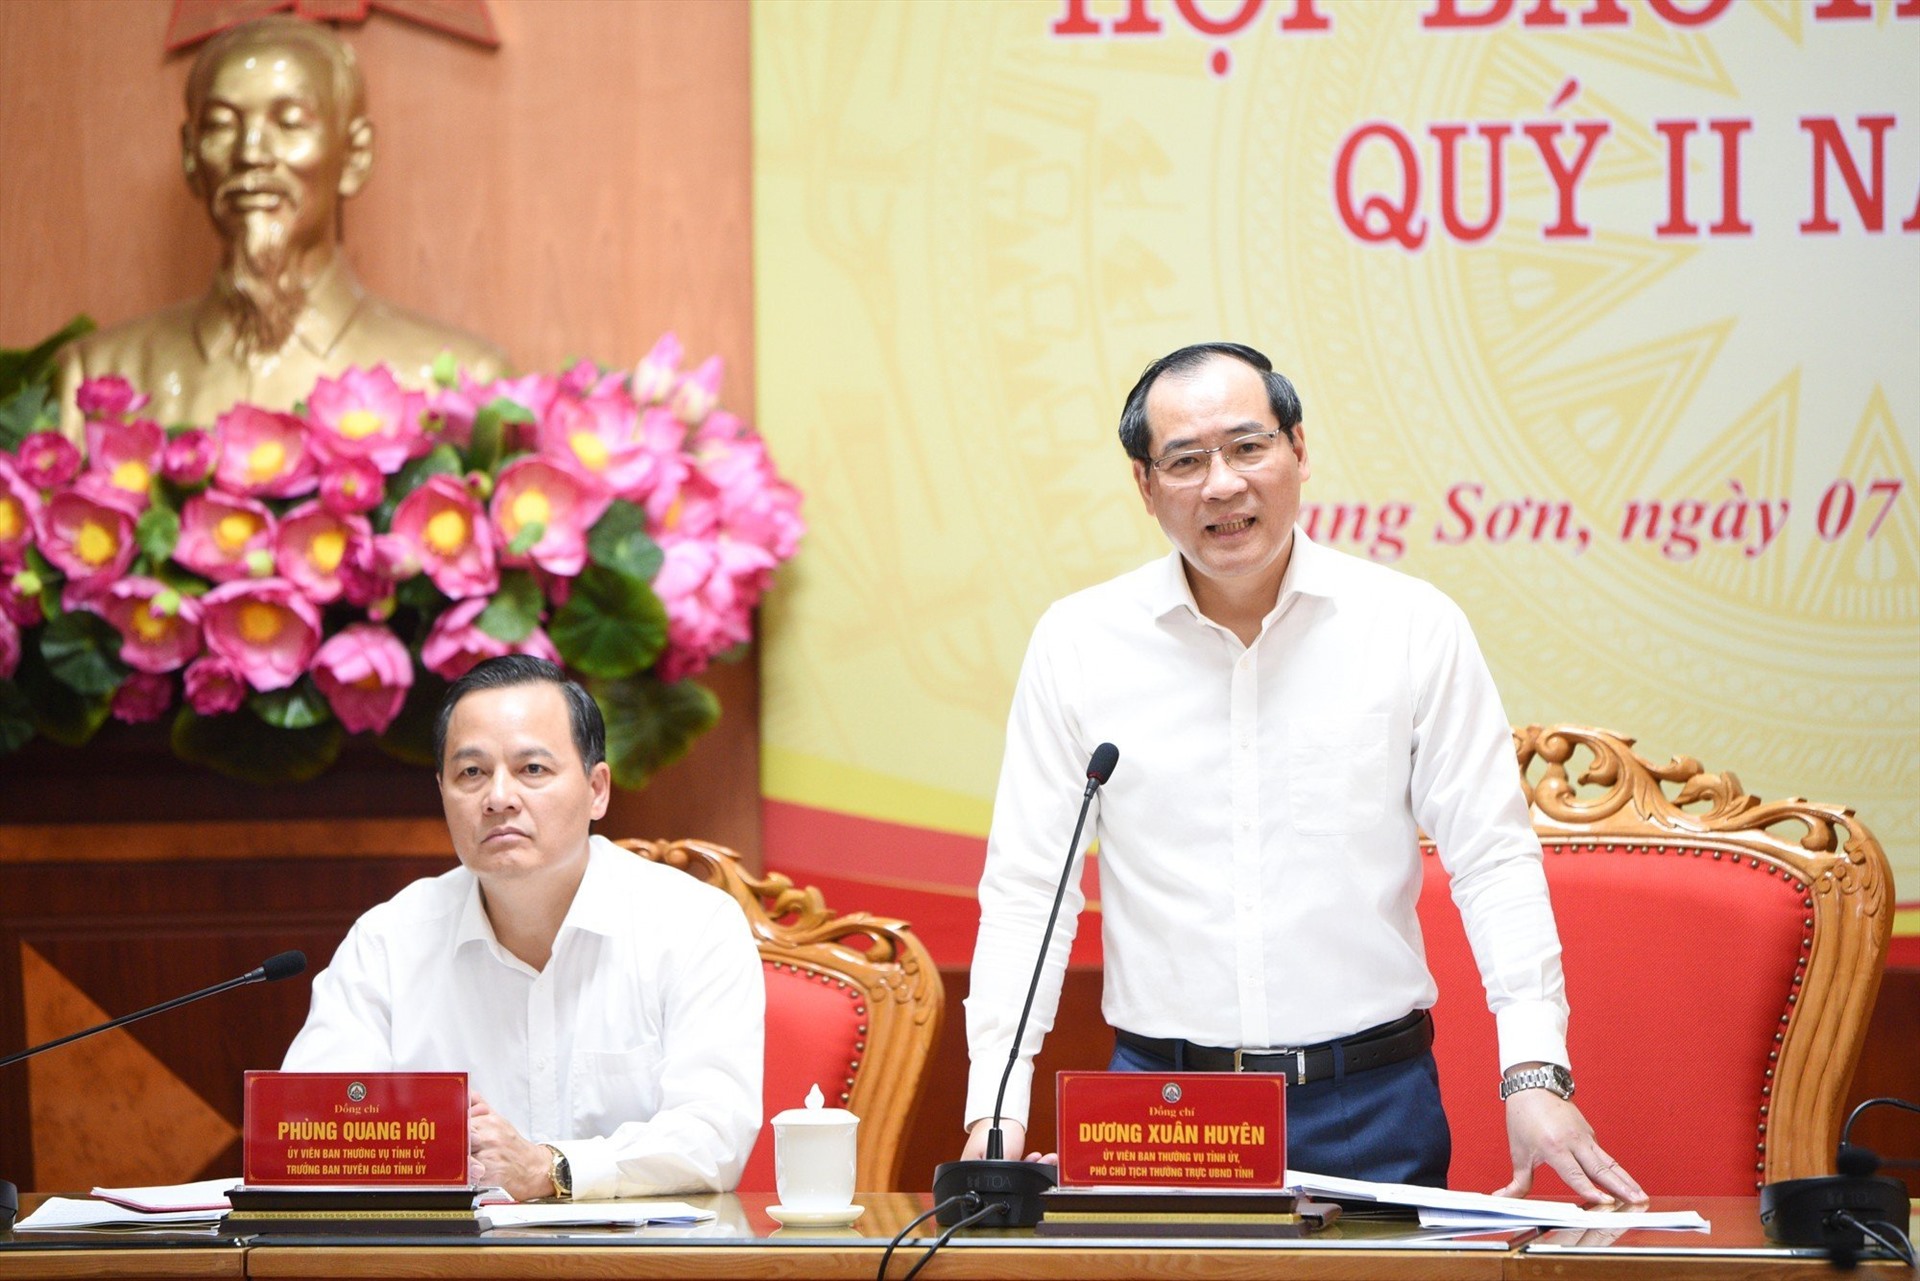 Ông Dương Xuân Huyên phát biểu tại cuộc họp báo. Ảnh: Trần Tuấn